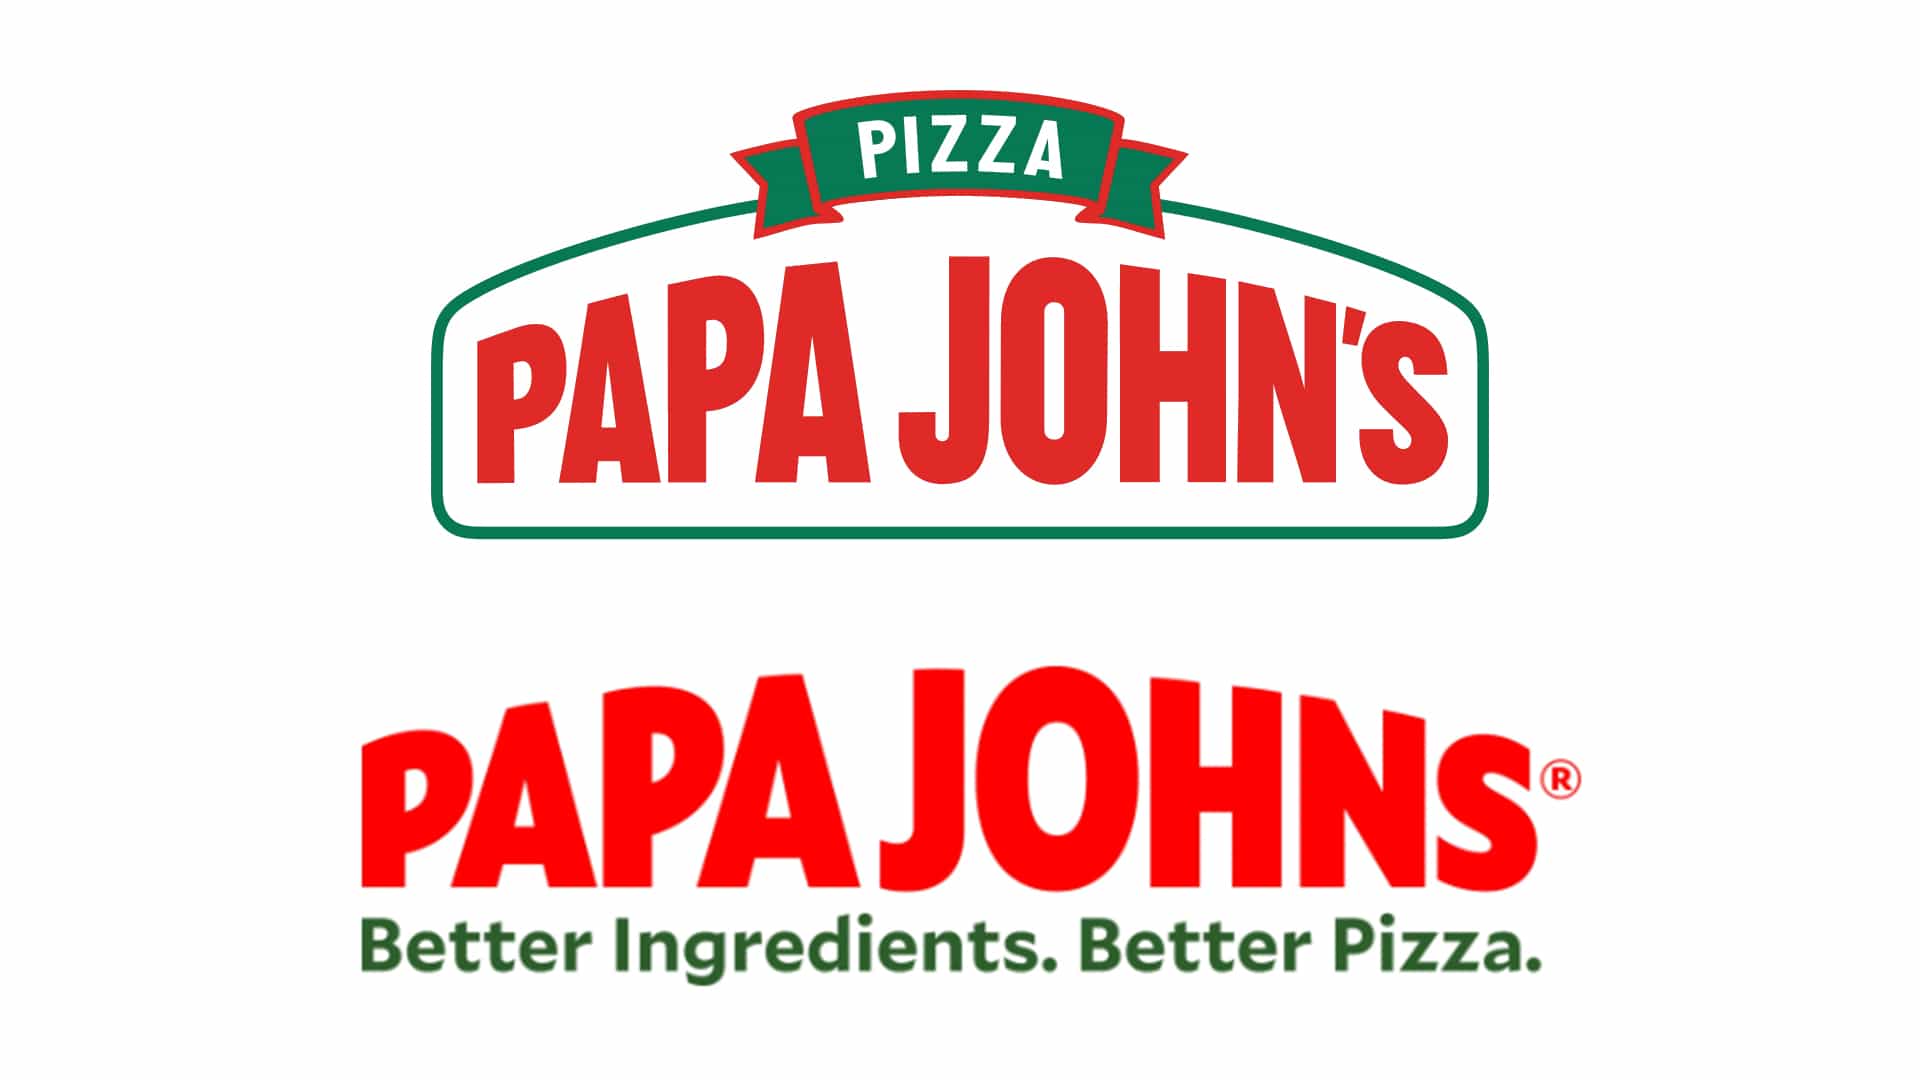 El nuevo logotipo de Papa Johns no tiene absolutamente ningún sentido